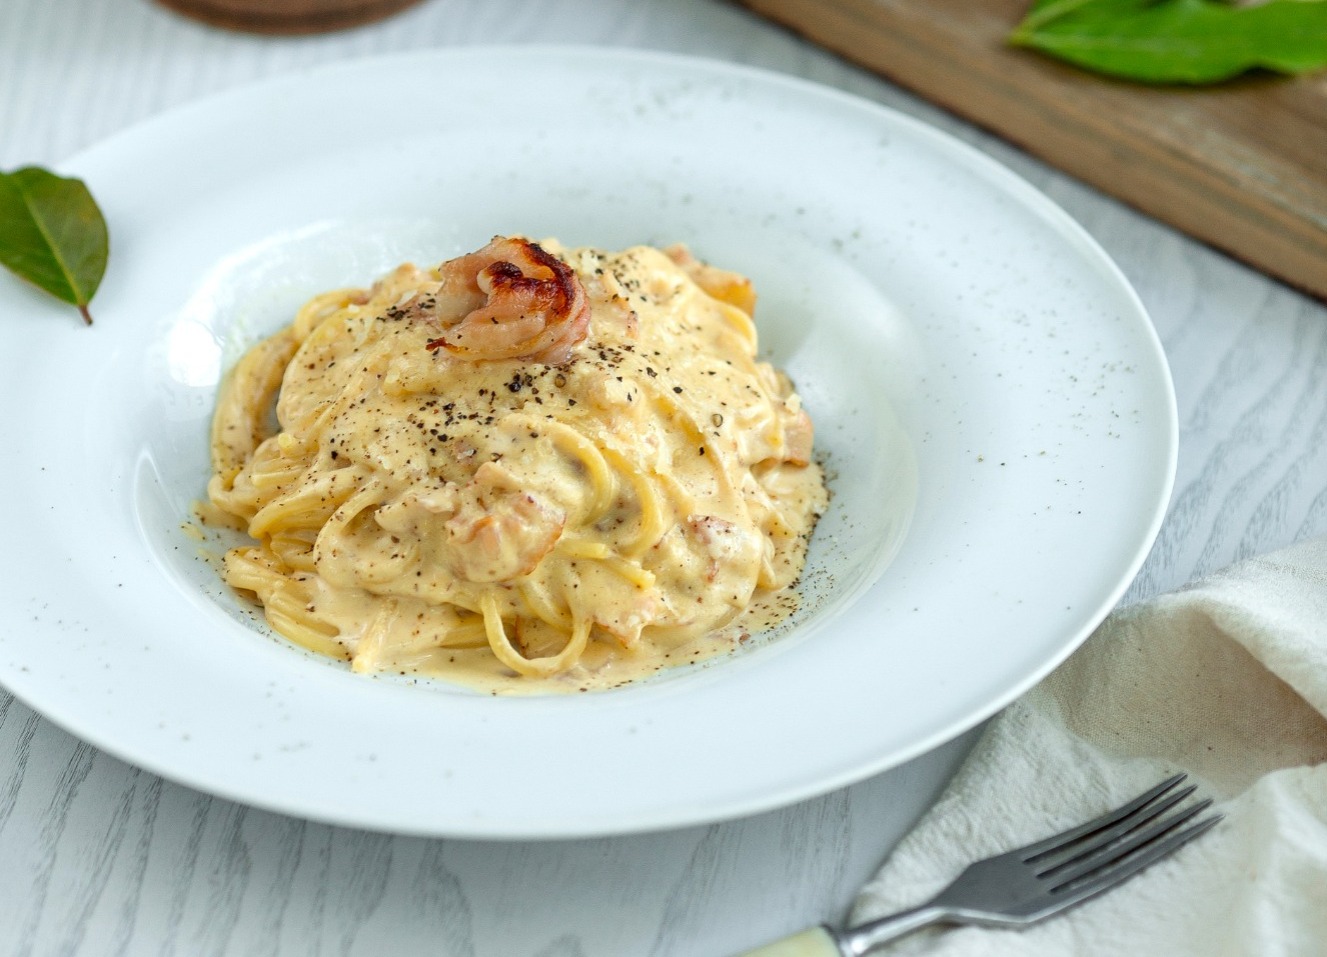 Resep Spaghetti Carbonara Halal yang Lezat dan Mudah